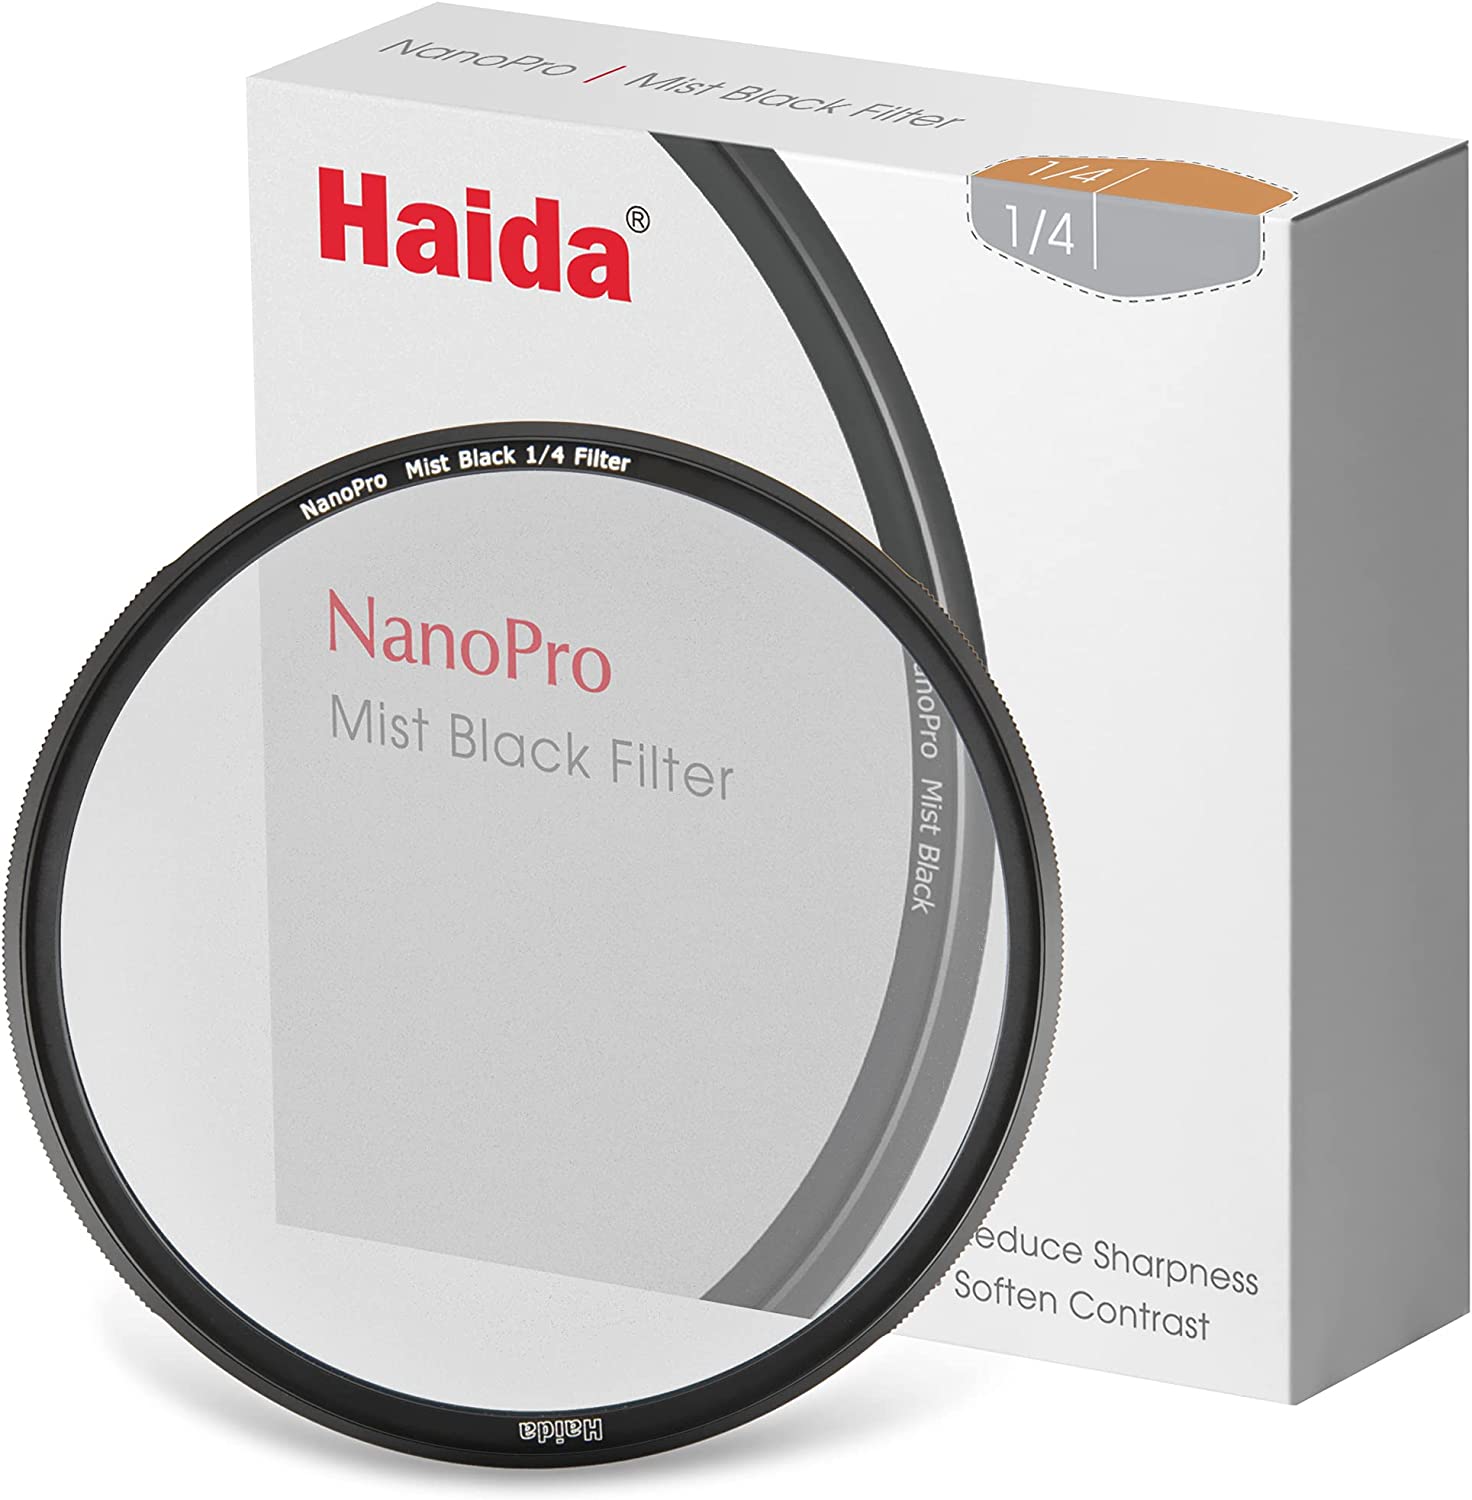 Haida NanoPro Mist Black 1/4 Filtro 82mm